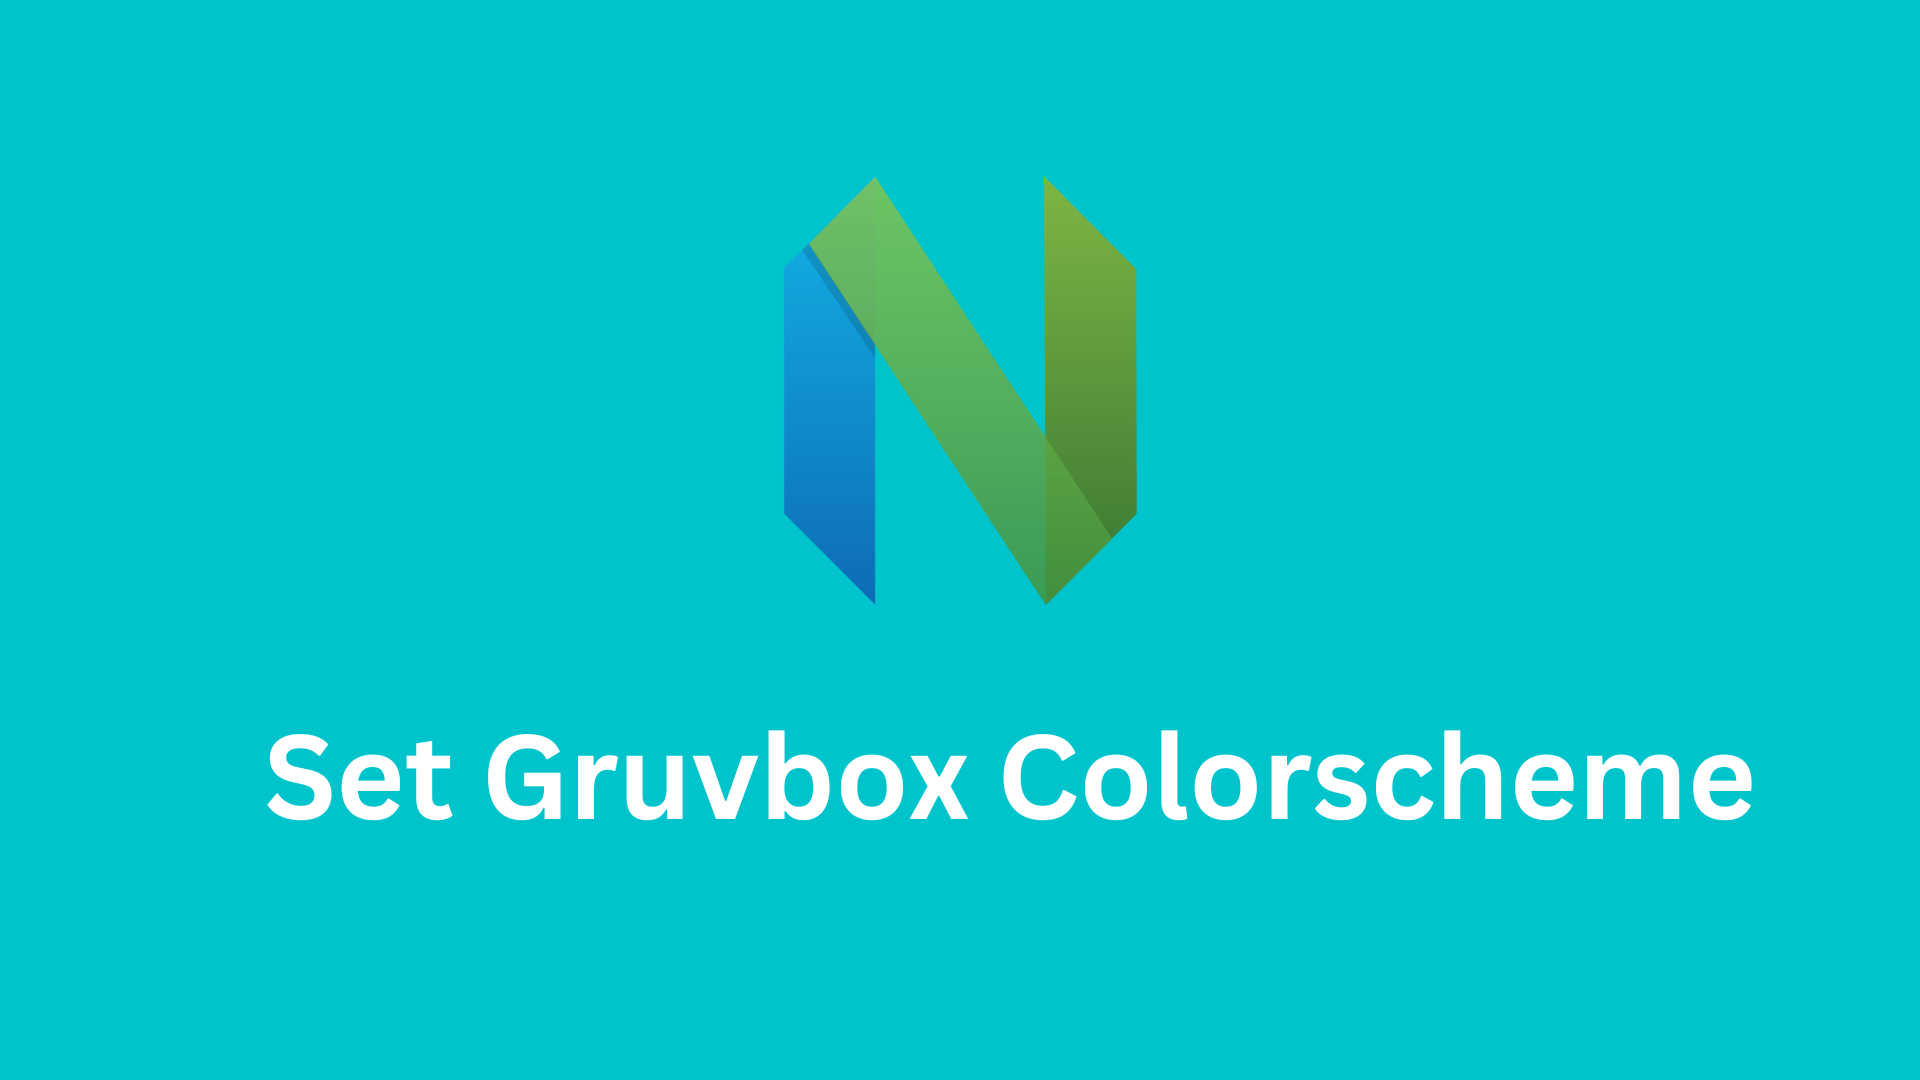 Set Gruvbox Colorscheme in Neovim